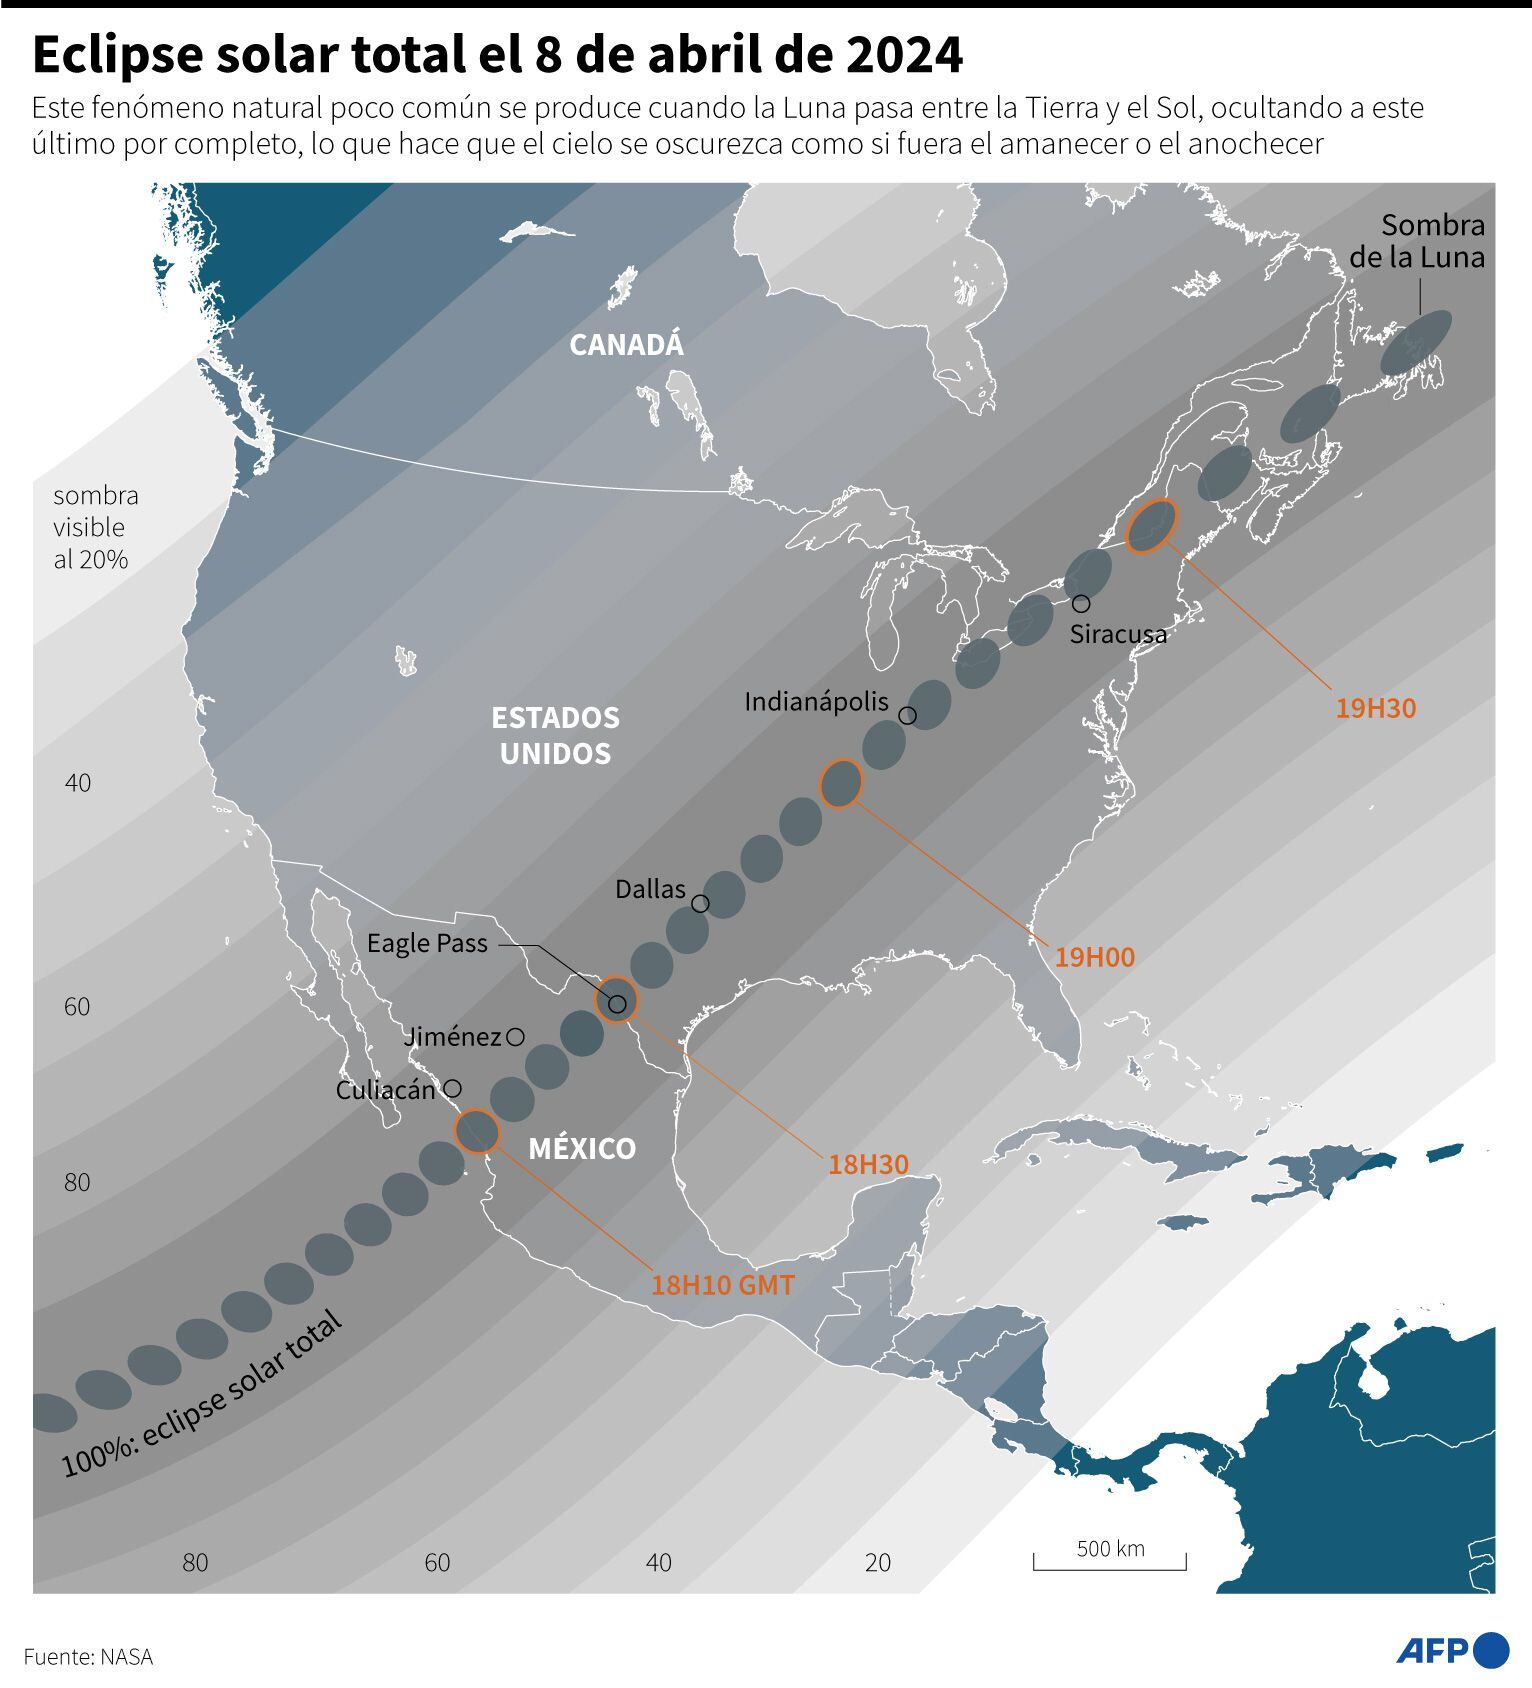 Mapa con las zonas de México, Estados Unidos y Canadá donde la sombra de la Luna cubrir completamente el Sol, lo que provocará un eclipse solar total el 8 de abril de 2024.